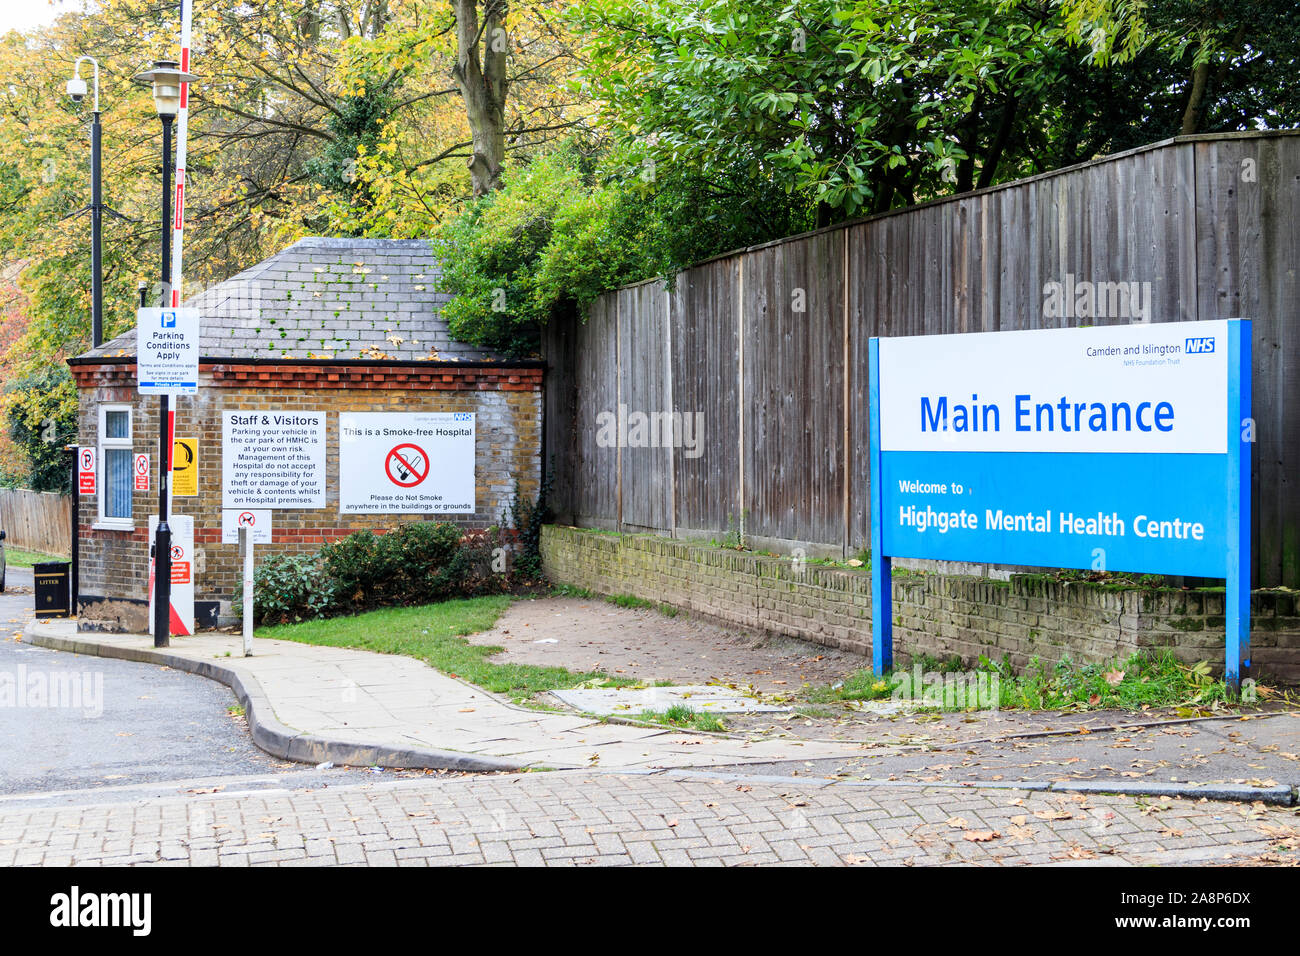 Der Eingang zum Highgate Mental Health Centre, Teil des Camden und Islington NHS Trust, Dartmouth Park Hill, North London, Großbritannien Stockfoto